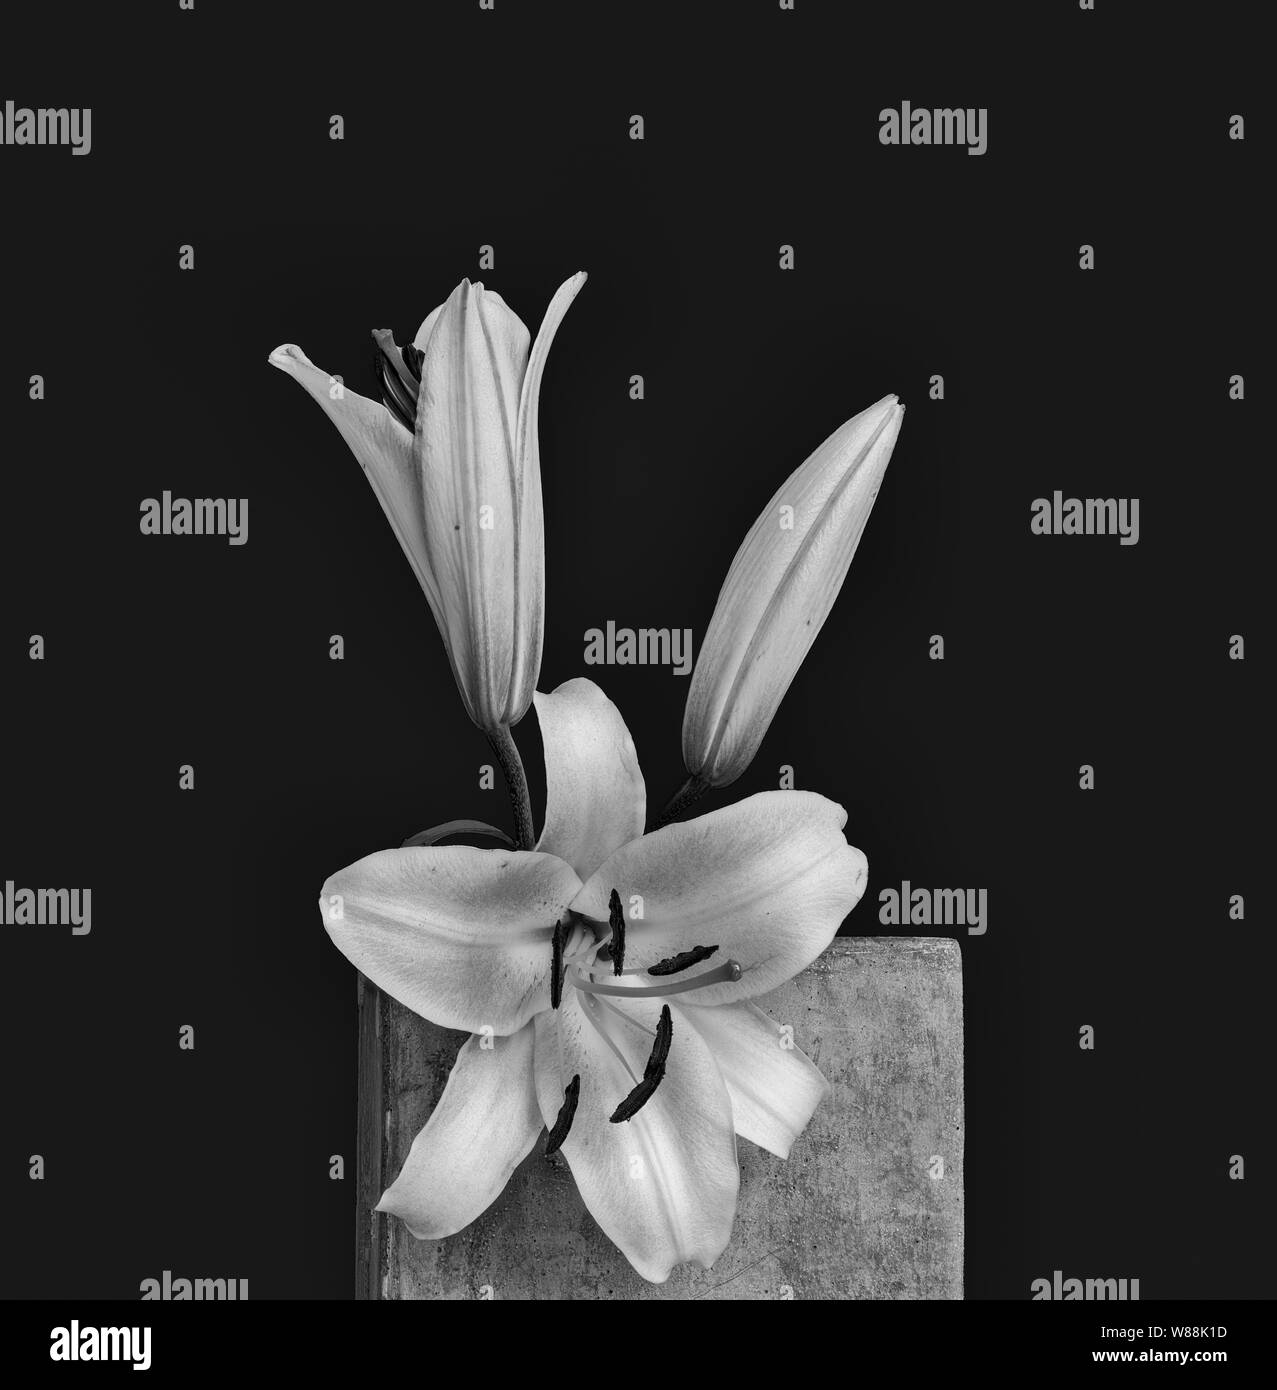 Fleurs de lys blanc et bud vintage,macro monochrome sur un cube de béton avec des gouttelettes d'eau,texture détaillées sur fond noir,style de peinture Banque D'Images